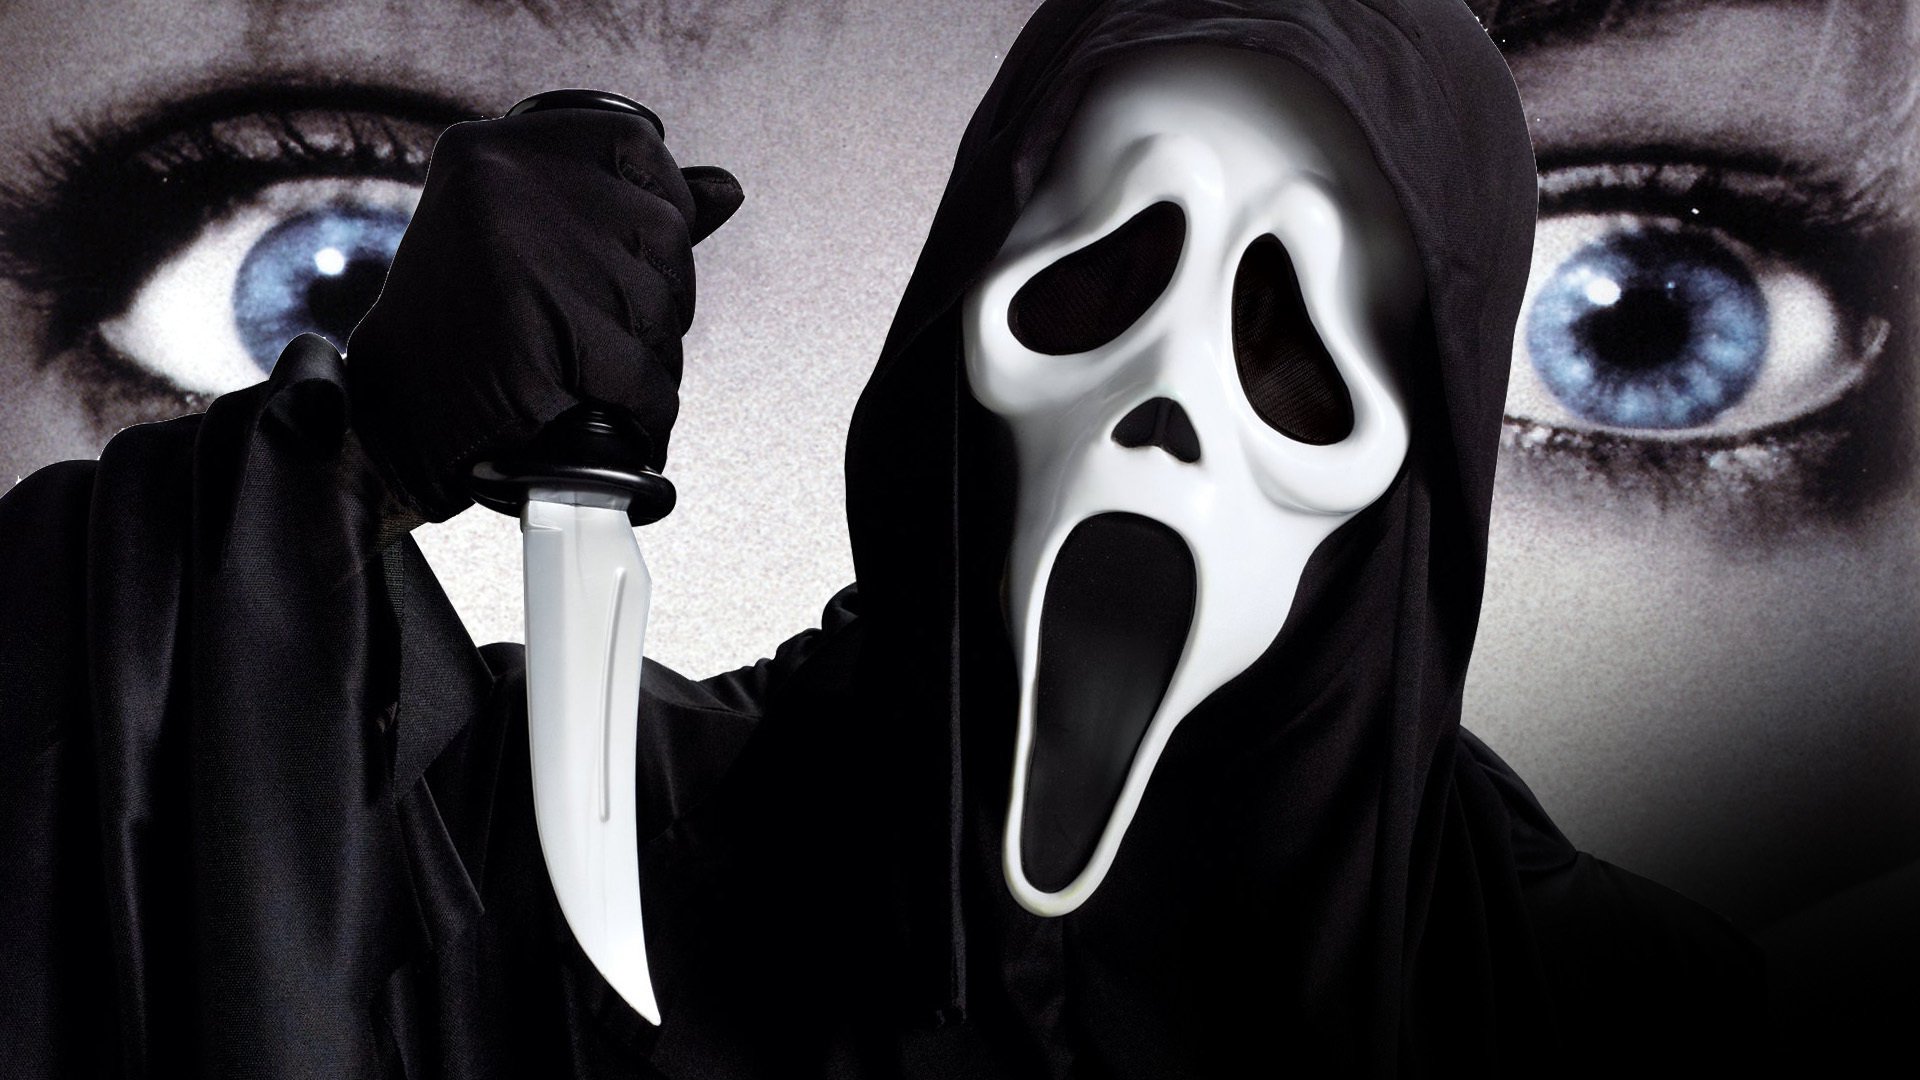 Scream : quel serial killer a inspiré la saga horrifique ?